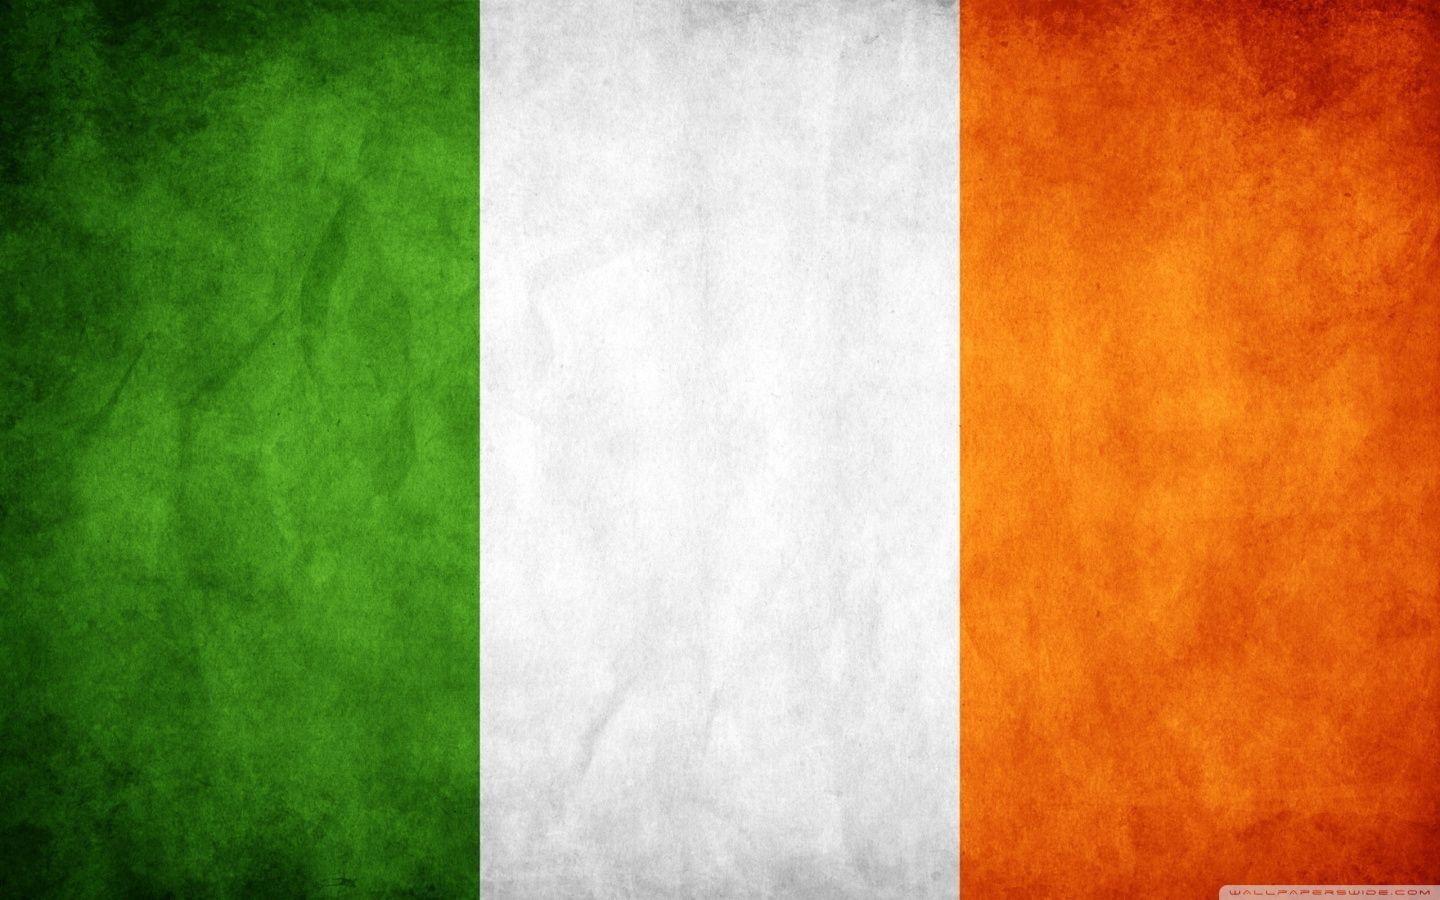 Ireland Flag HD desktop wallpaper, High Definition, Fullscreen